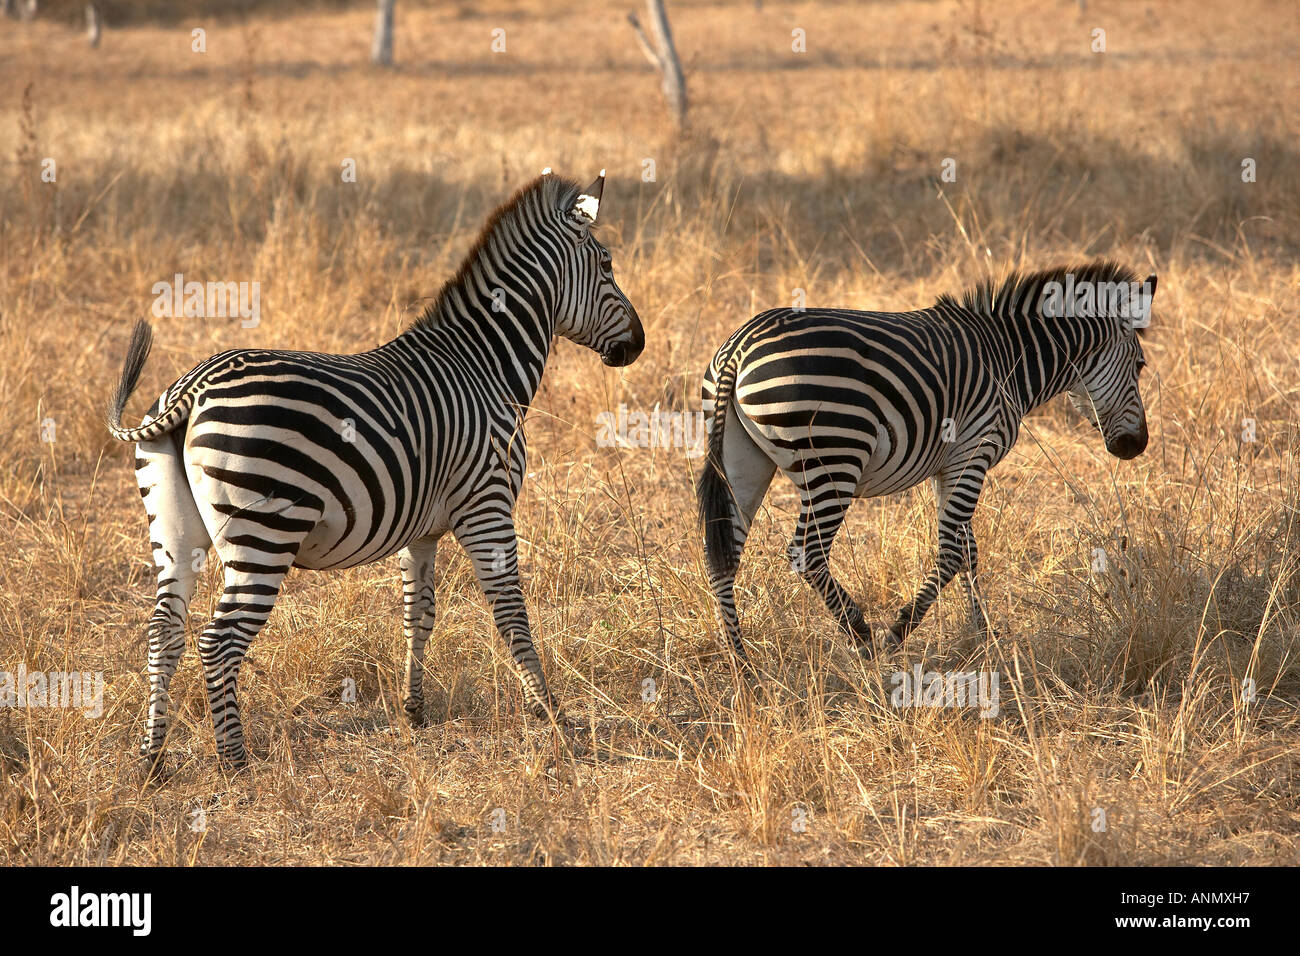 Zebra Crawshayi famille endémique dans le parc national de South Luangwa Zambie Afrique du Sud Banque D'Images